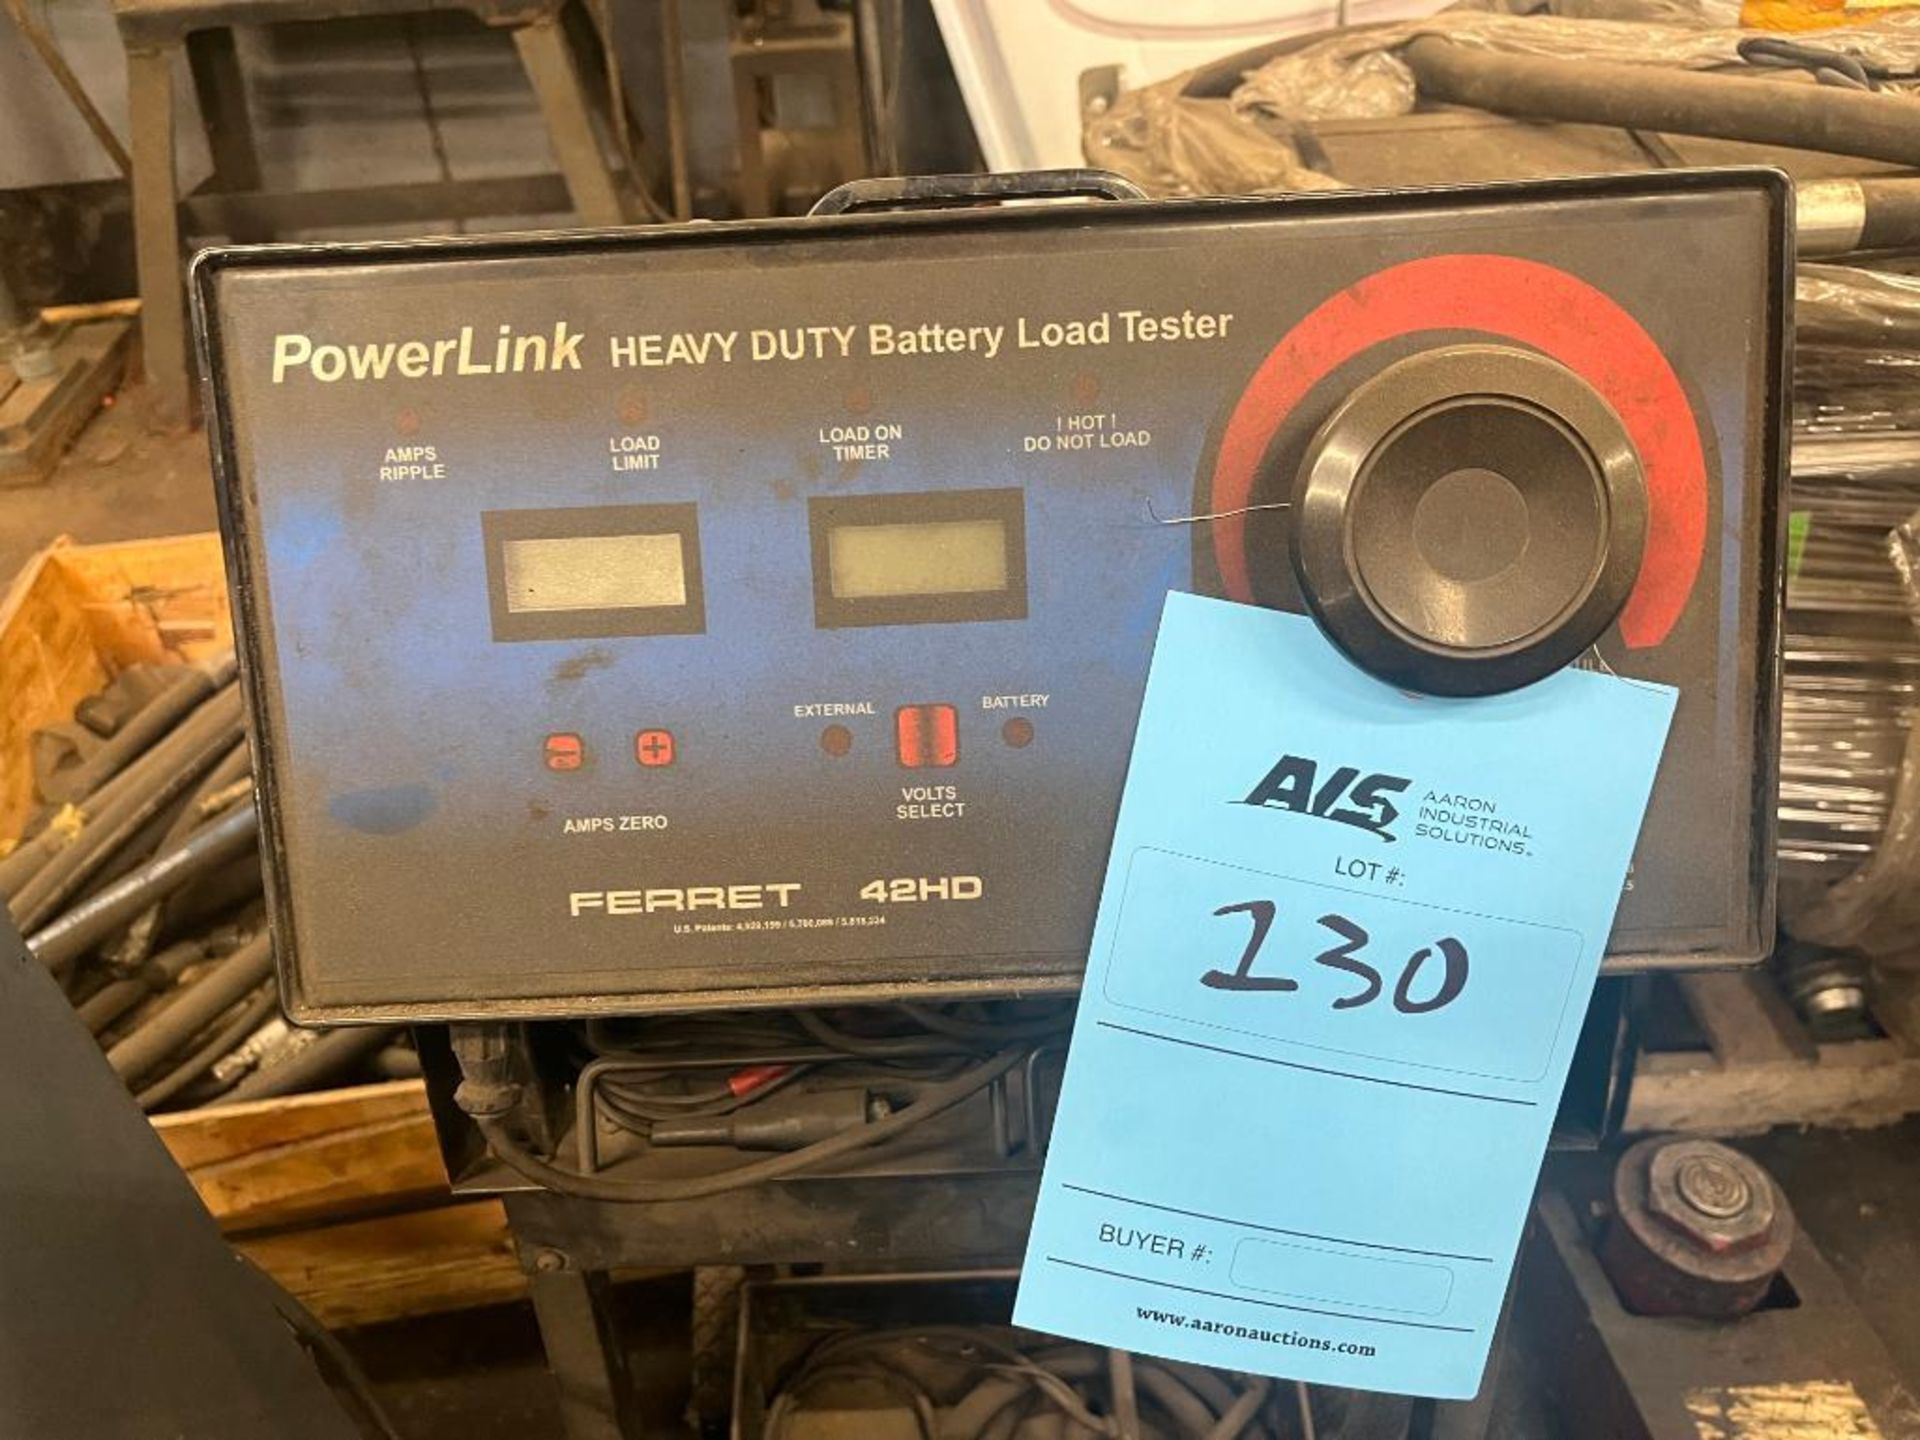 PowerLink Heavy Duty Battery Load Tester - Image 2 of 3